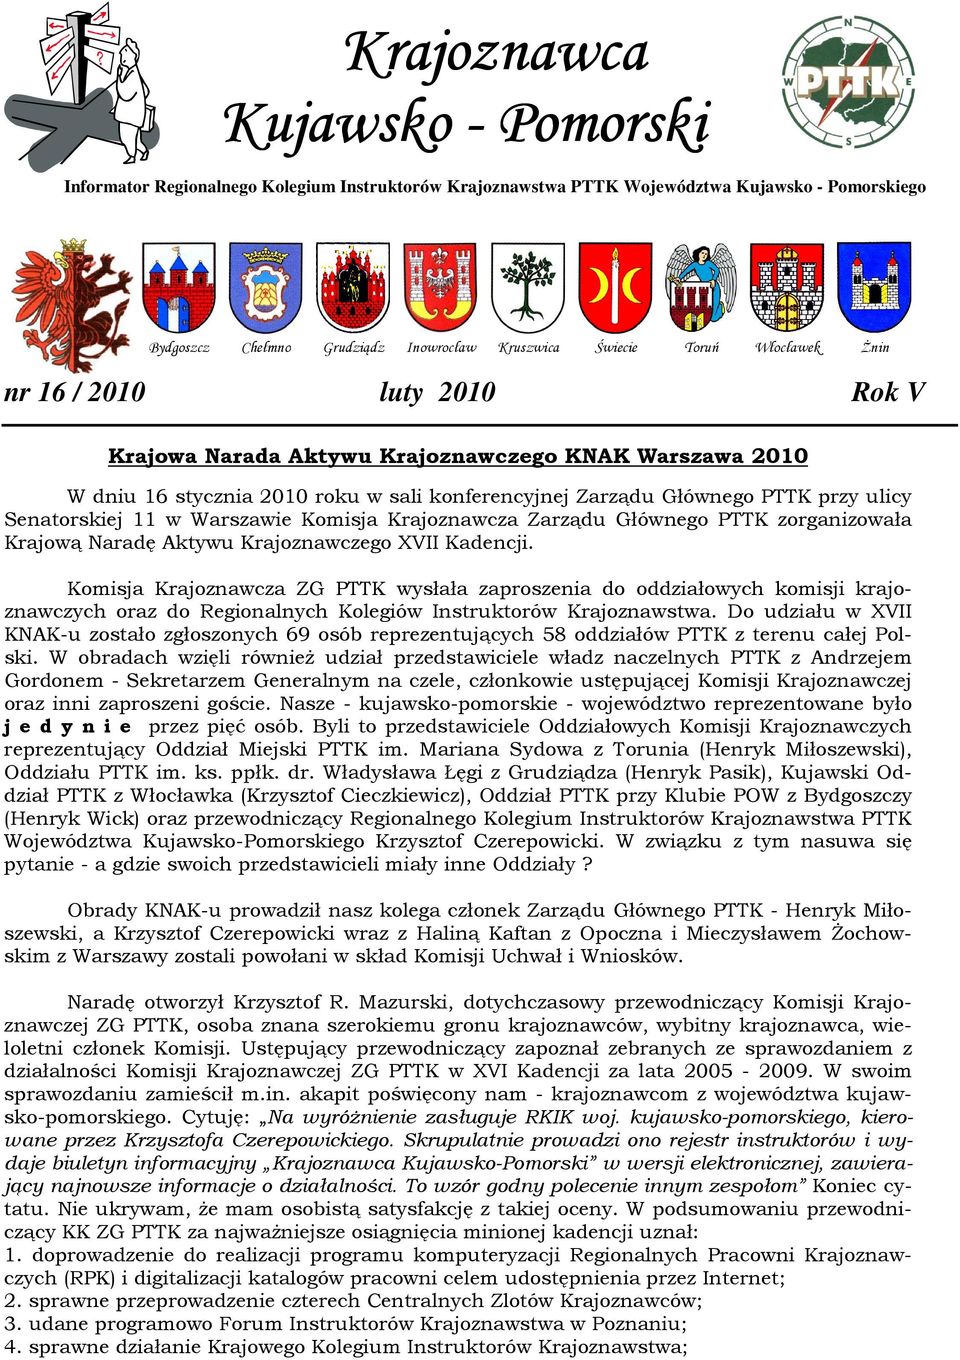 w Warszawie Komisja Krajoznawcza Zarządu Głównego PTTK zorganizowała Krajową Naradę Aktywu Krajoznawczego XVII Kadencji.